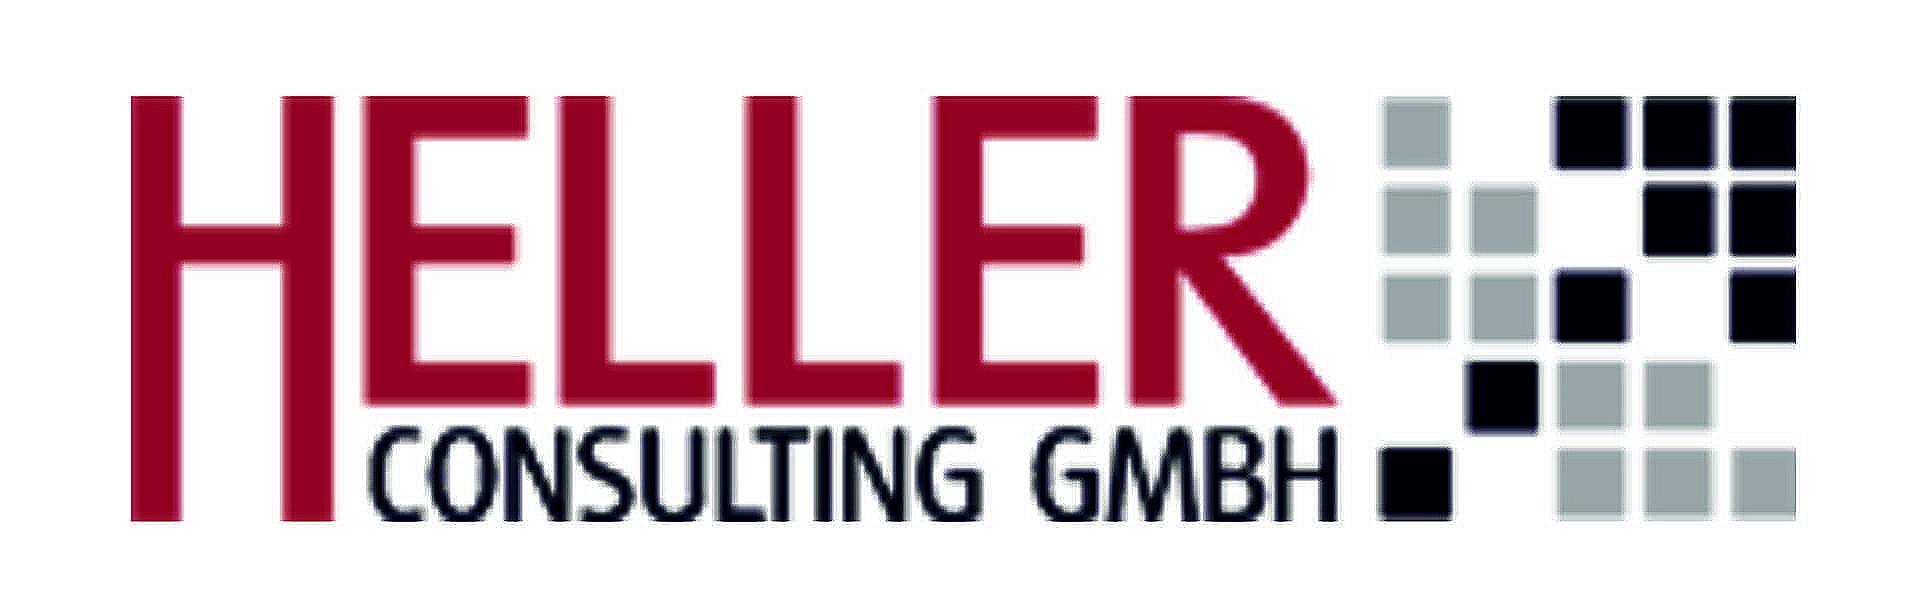 (c) Heller-consulting.net